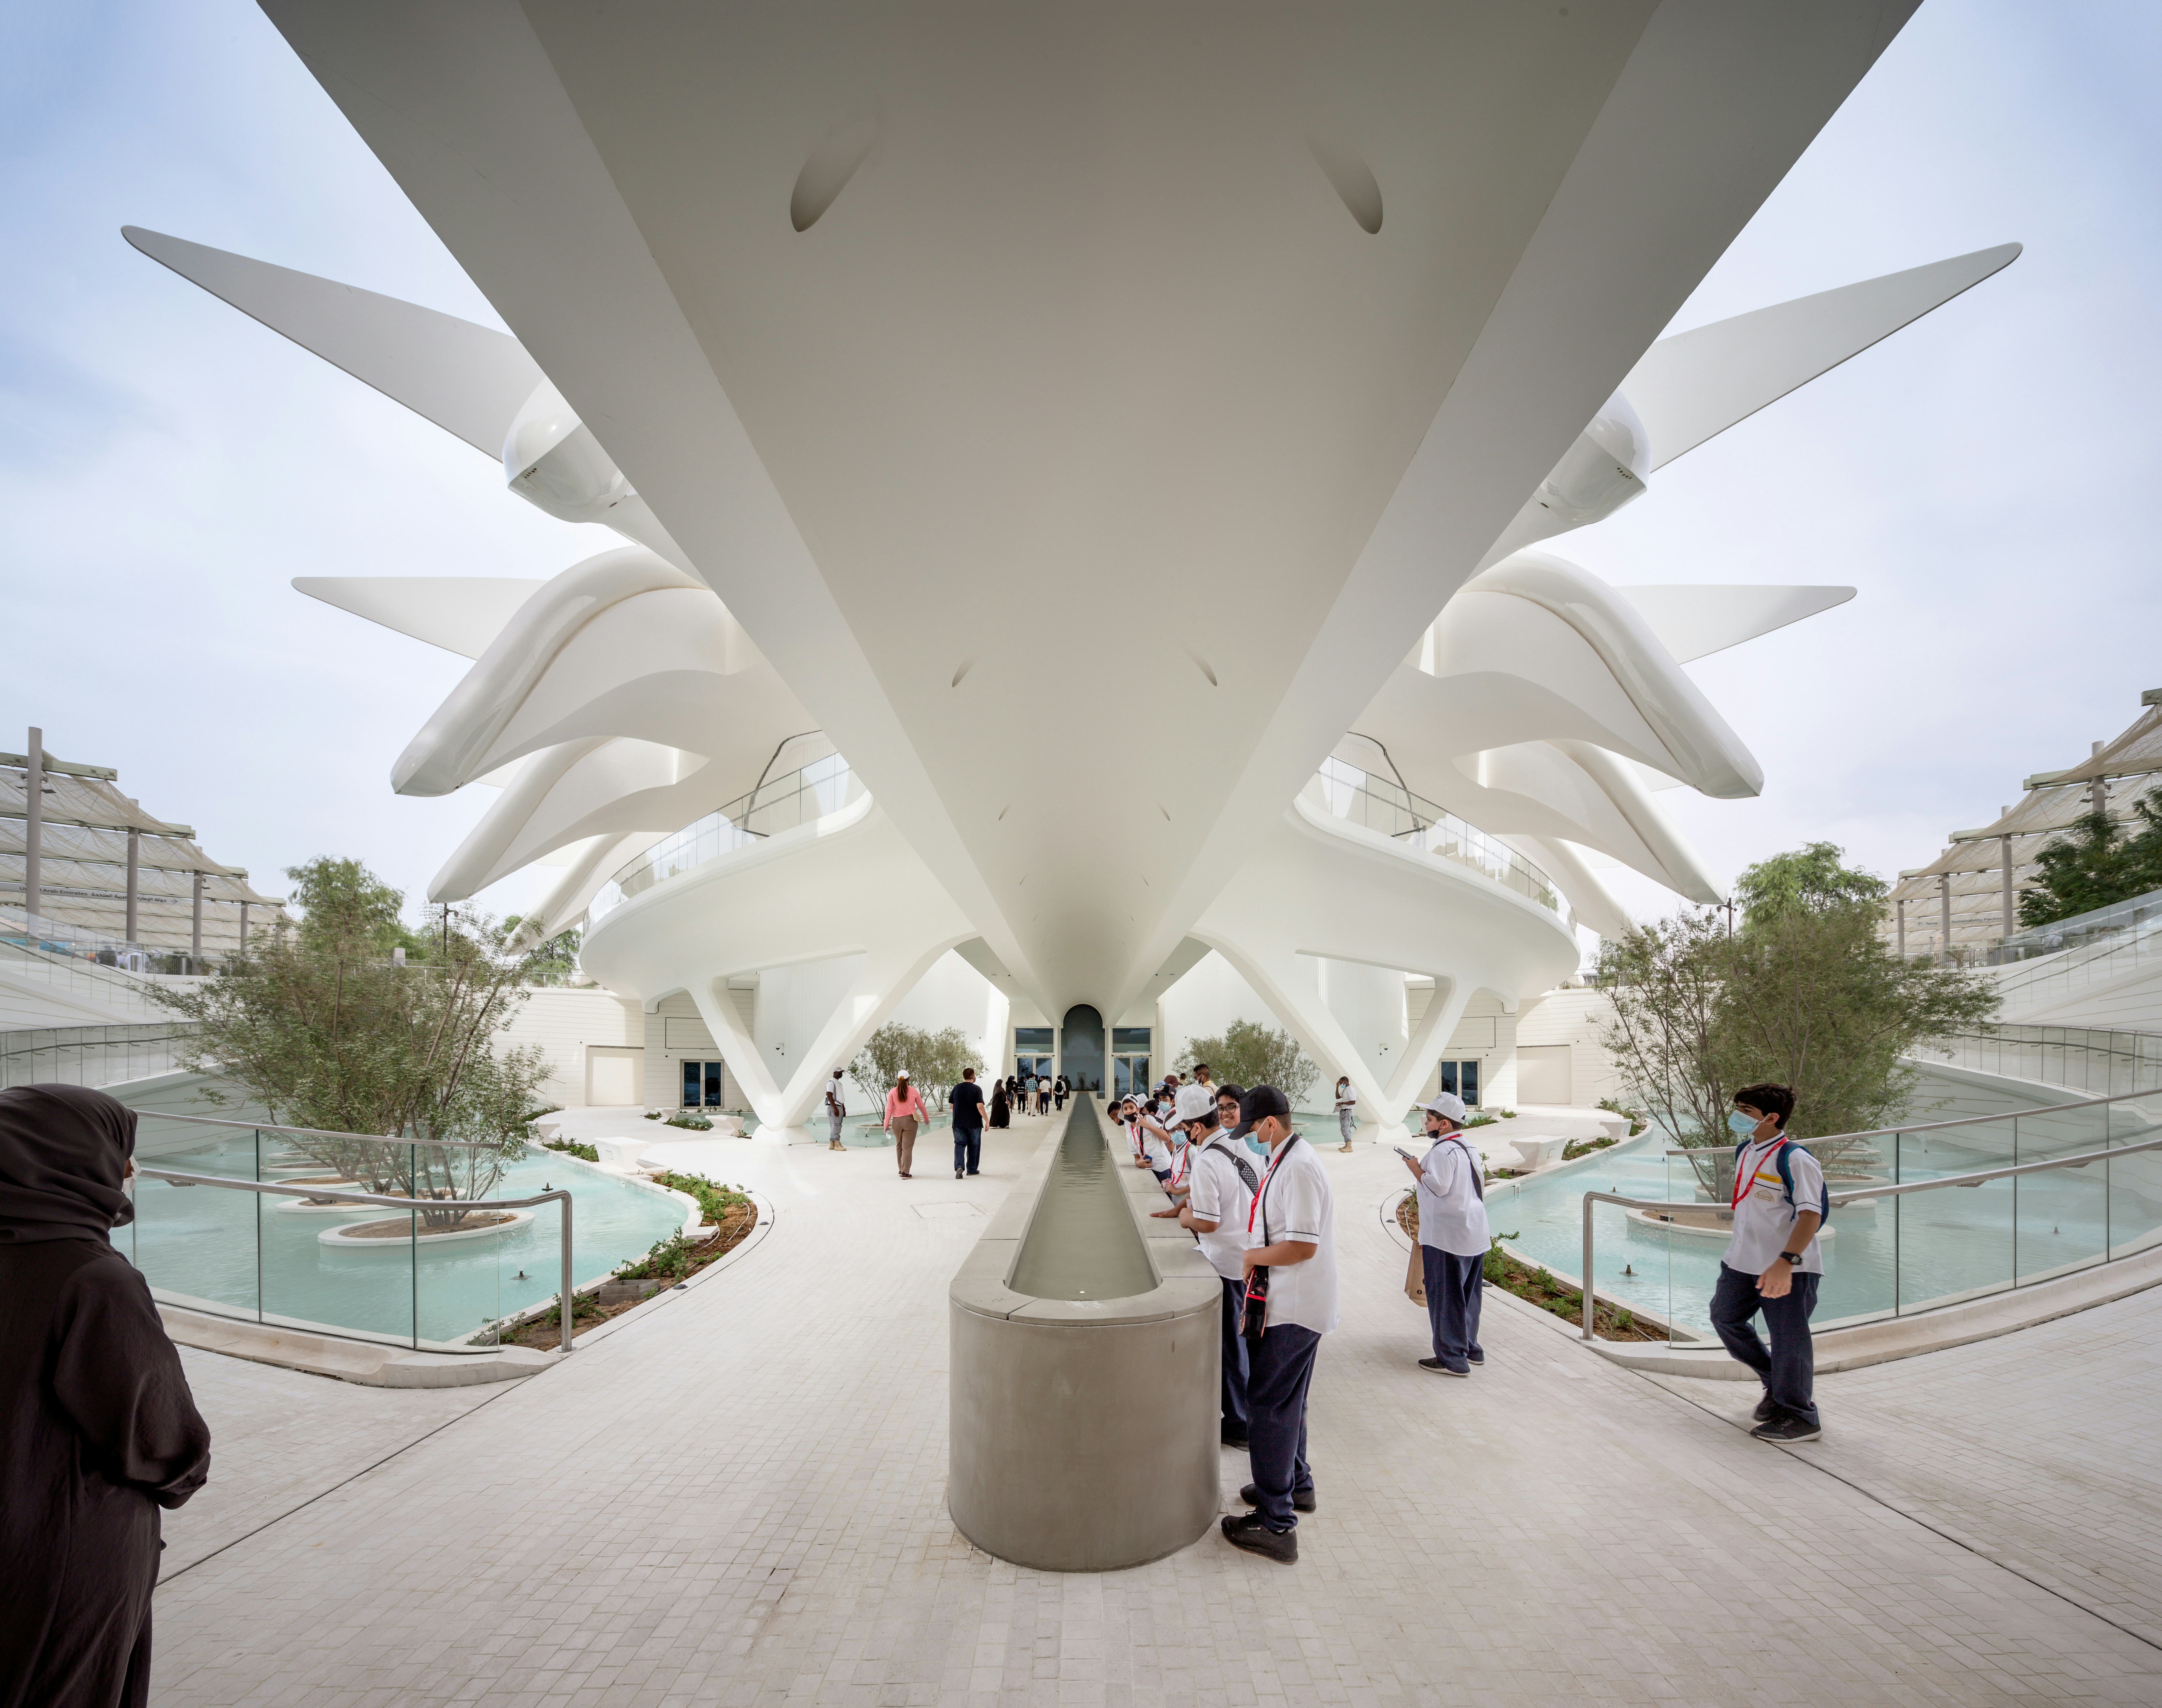 Paviljoen VAE in Dubai: The Land of Dreamers Who Do